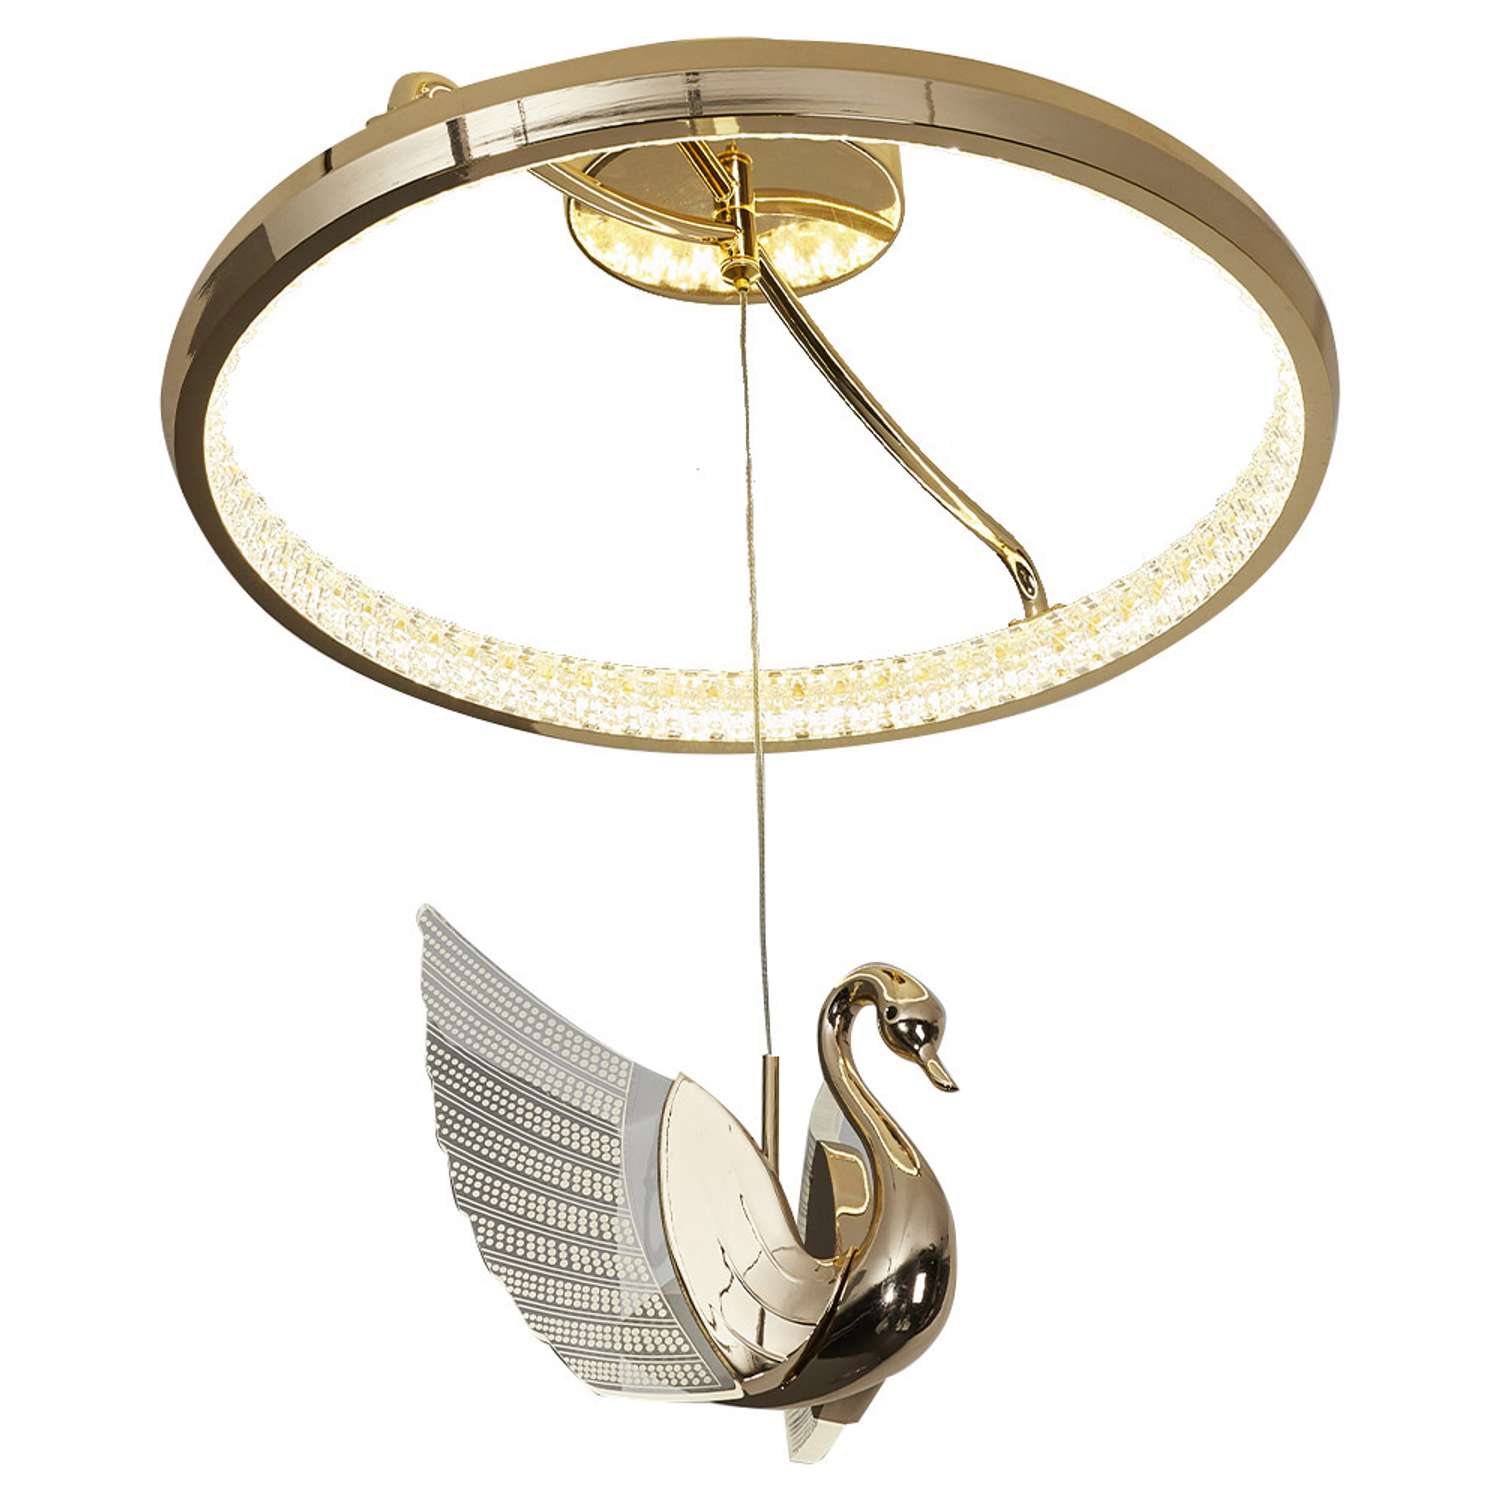 Потолочный светильник LLL KD8169 золотой Птицы с вращением на 360 градусов - фото 1